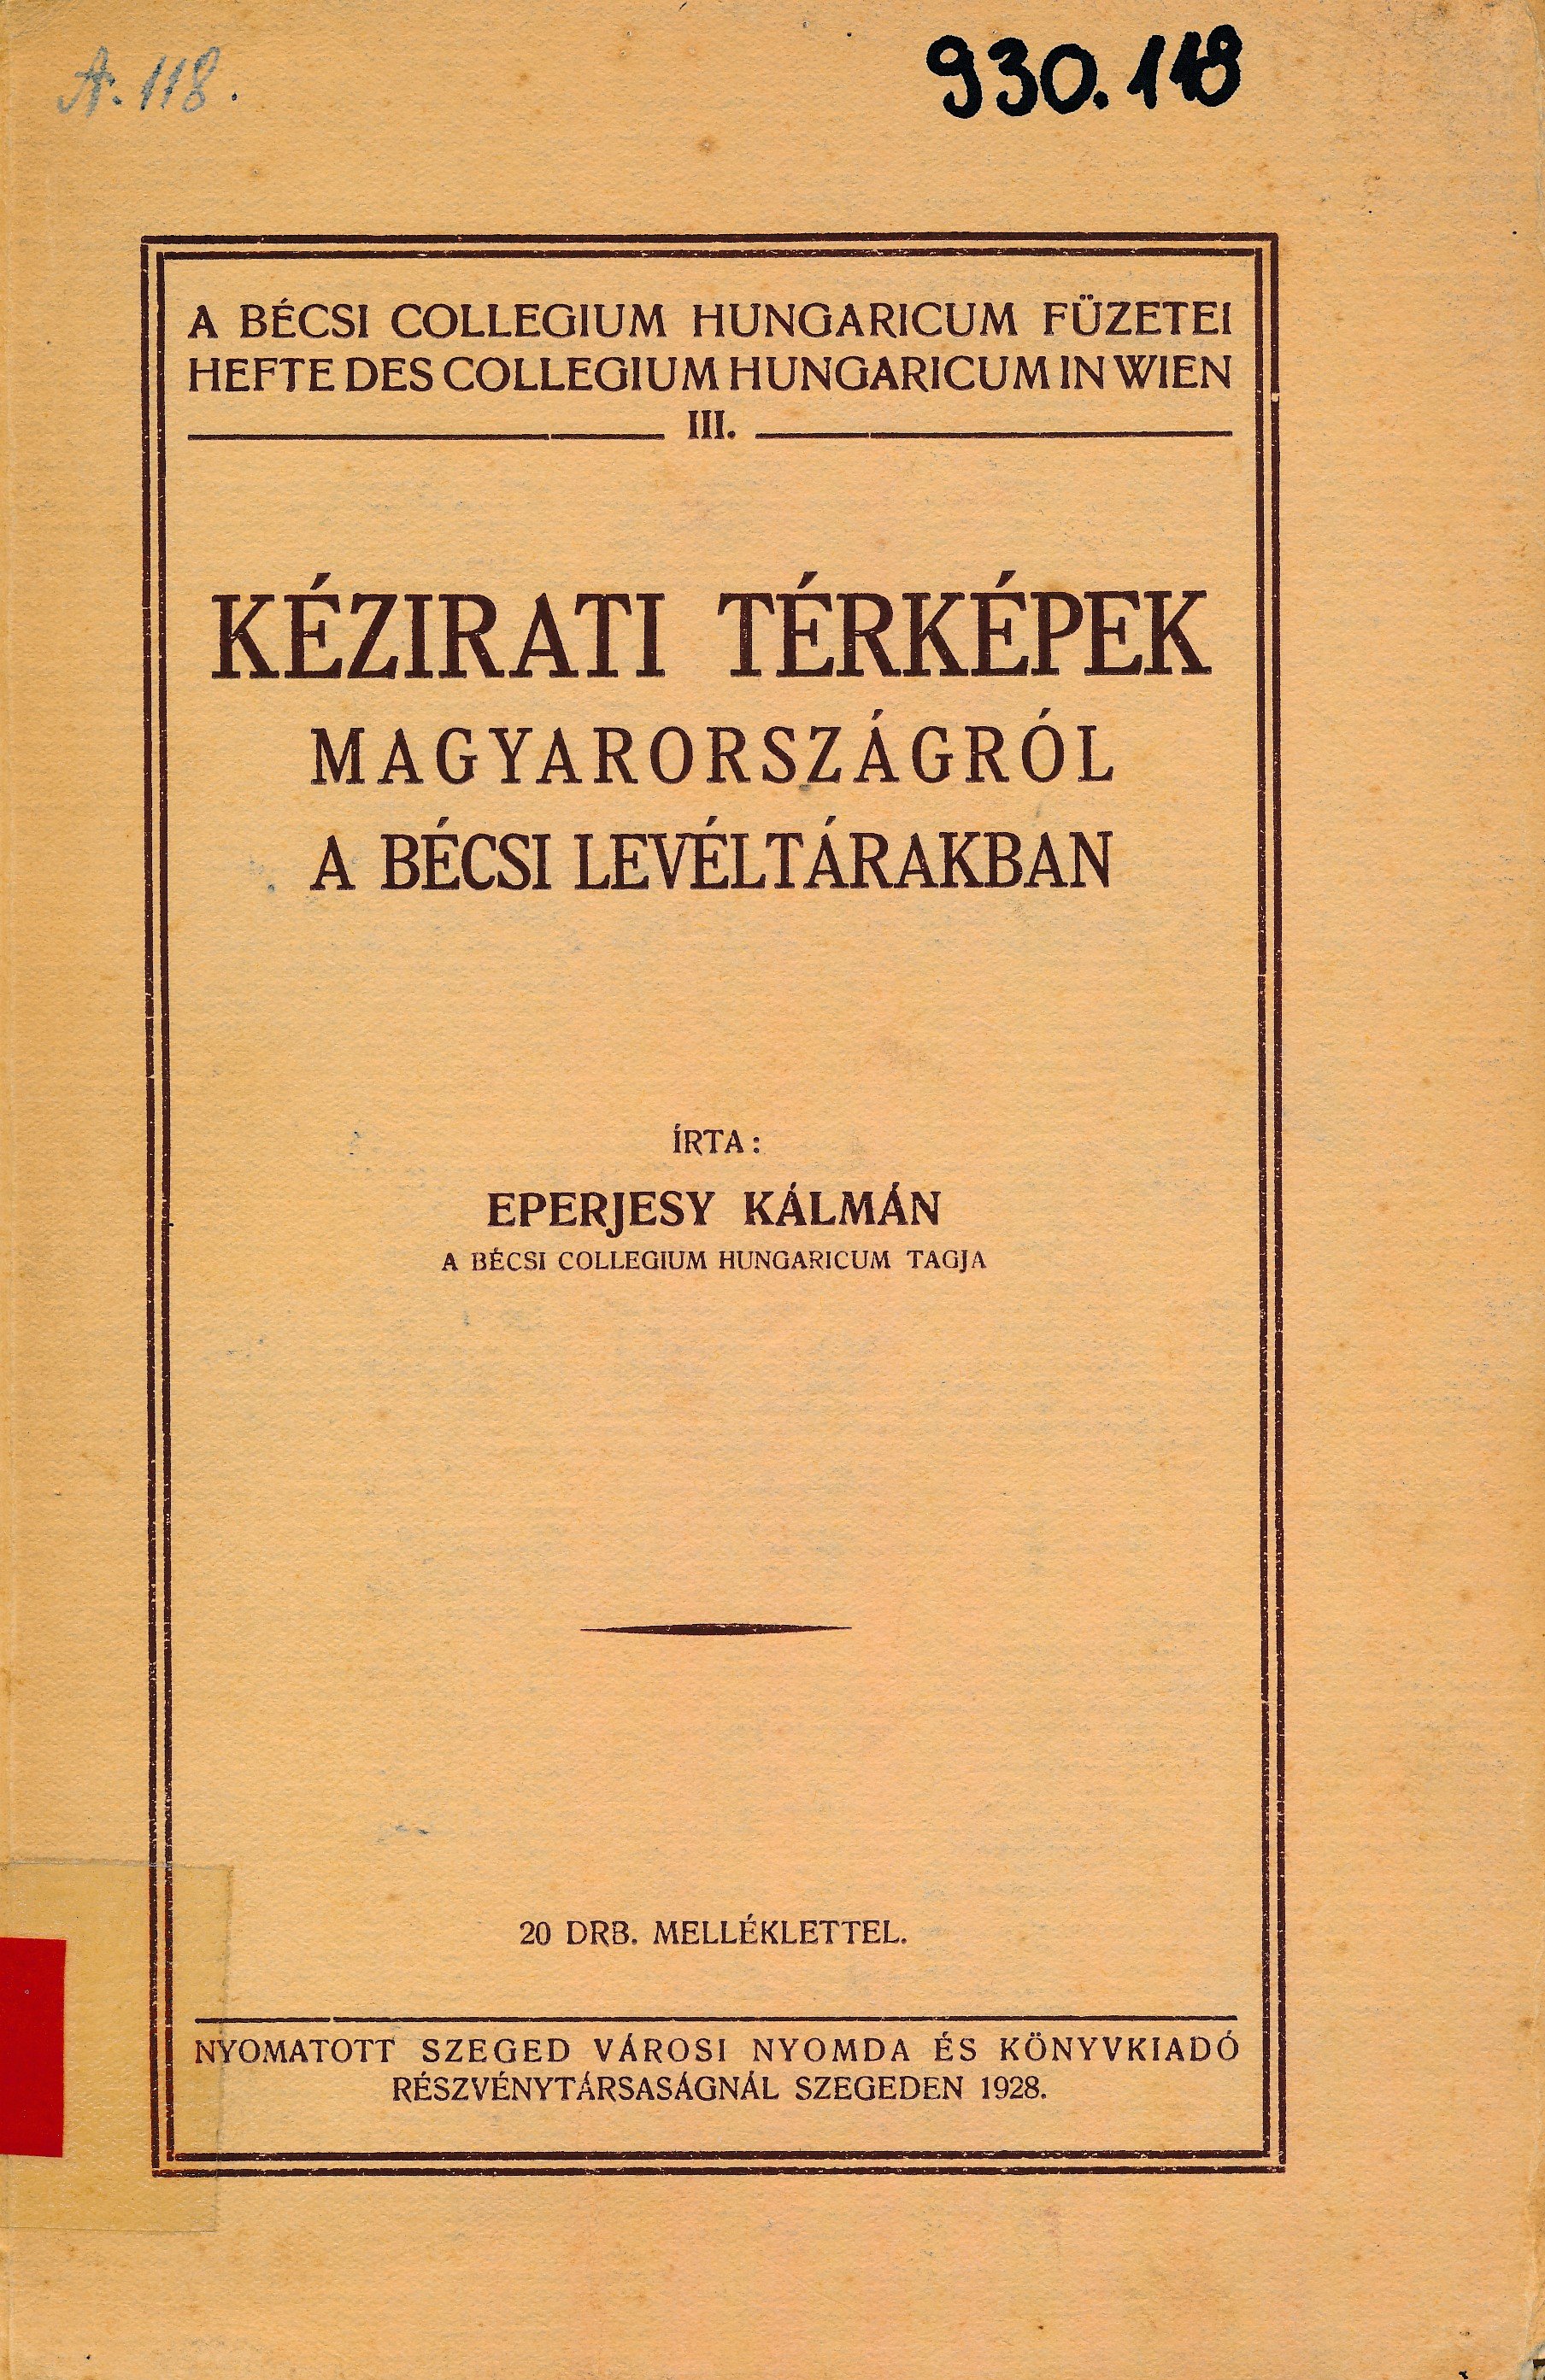 Kézirati térképek Magyarországról a bécsi levéltárakban (Erkel Ferenc Múzeum és Könyvtár, Gyula CC BY-NC-SA)